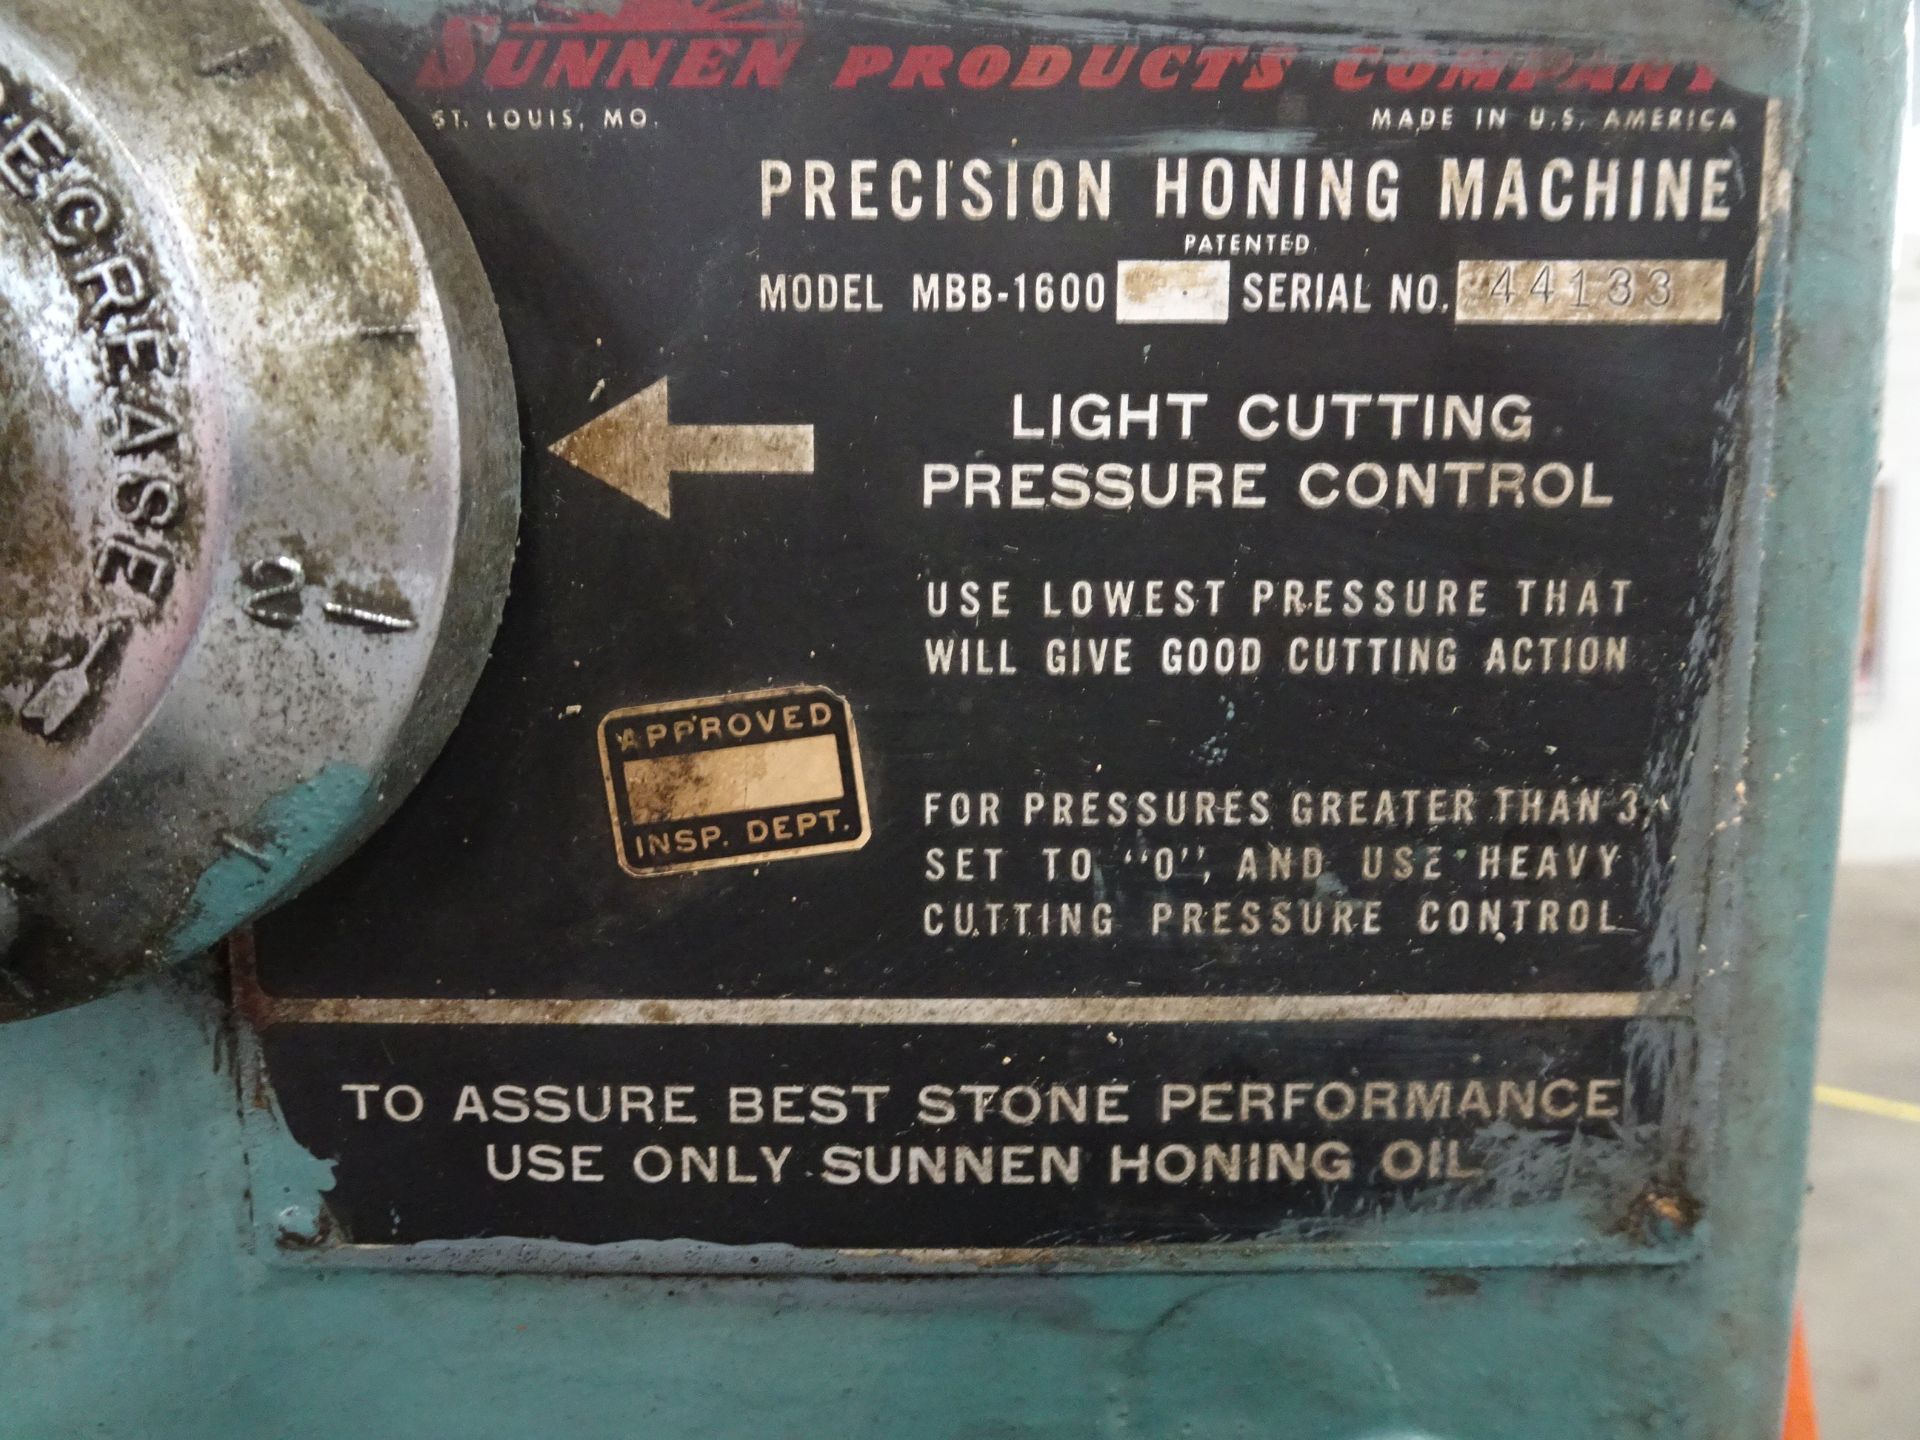 Sunnen Model MBB-1600 Horizontal Honing Machine - Image 3 of 3